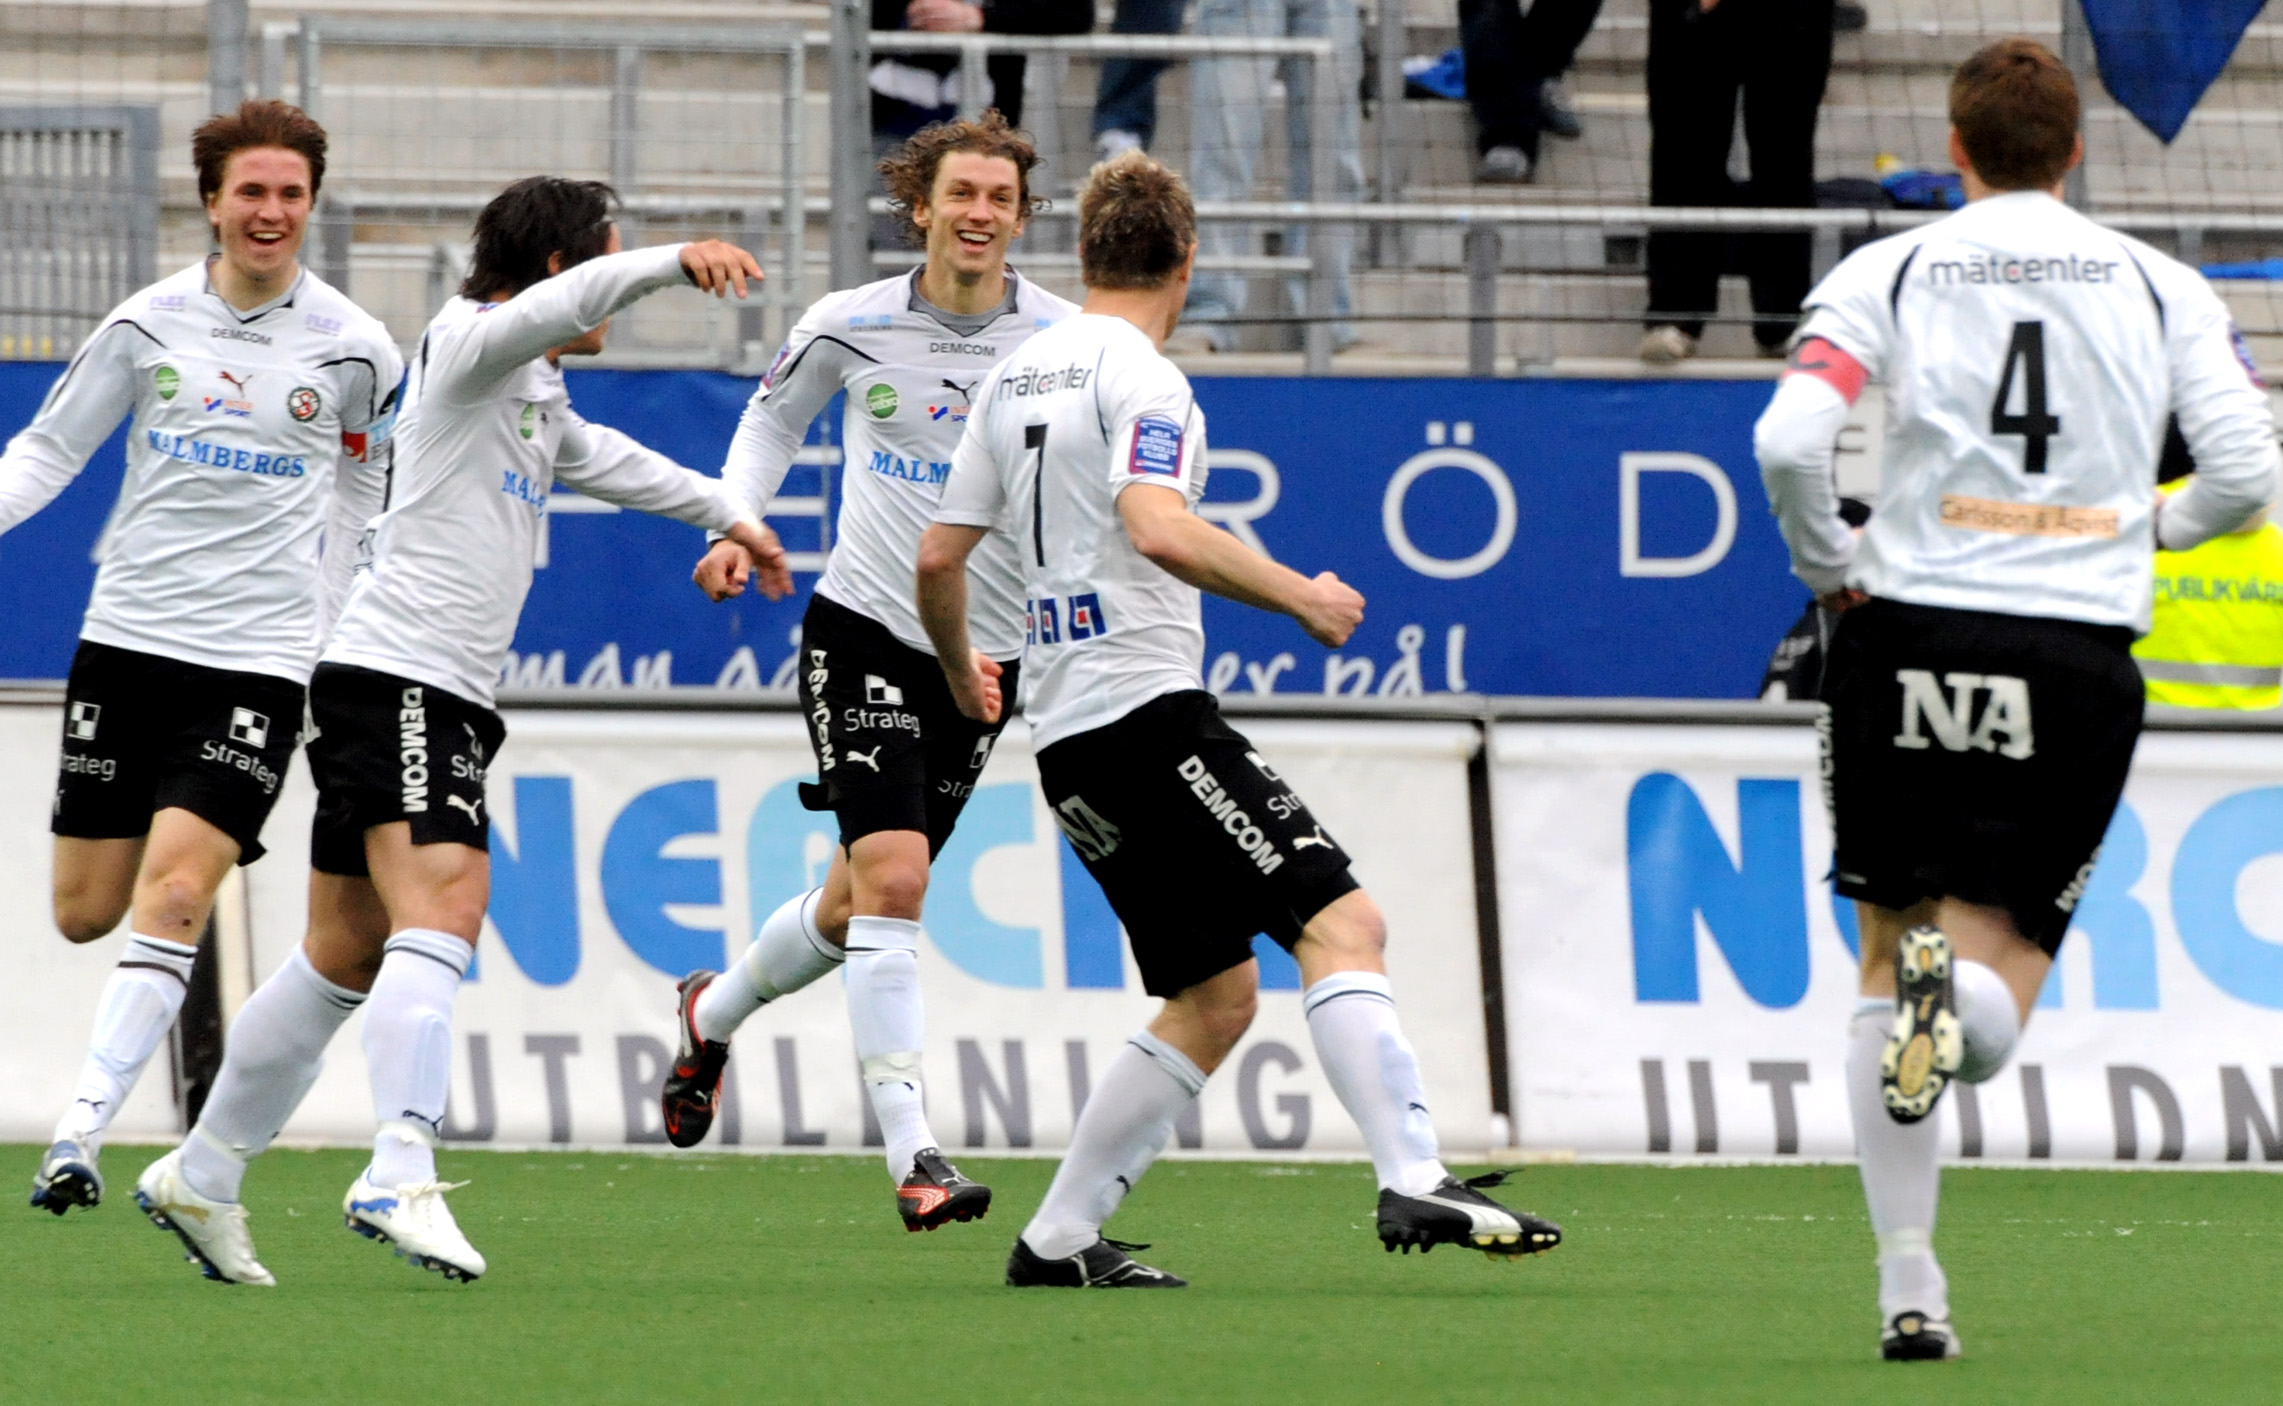 Magnus Kihlberg, Paulinho, Örebro, Allsvenskan, Kim Olsen, Halmstad